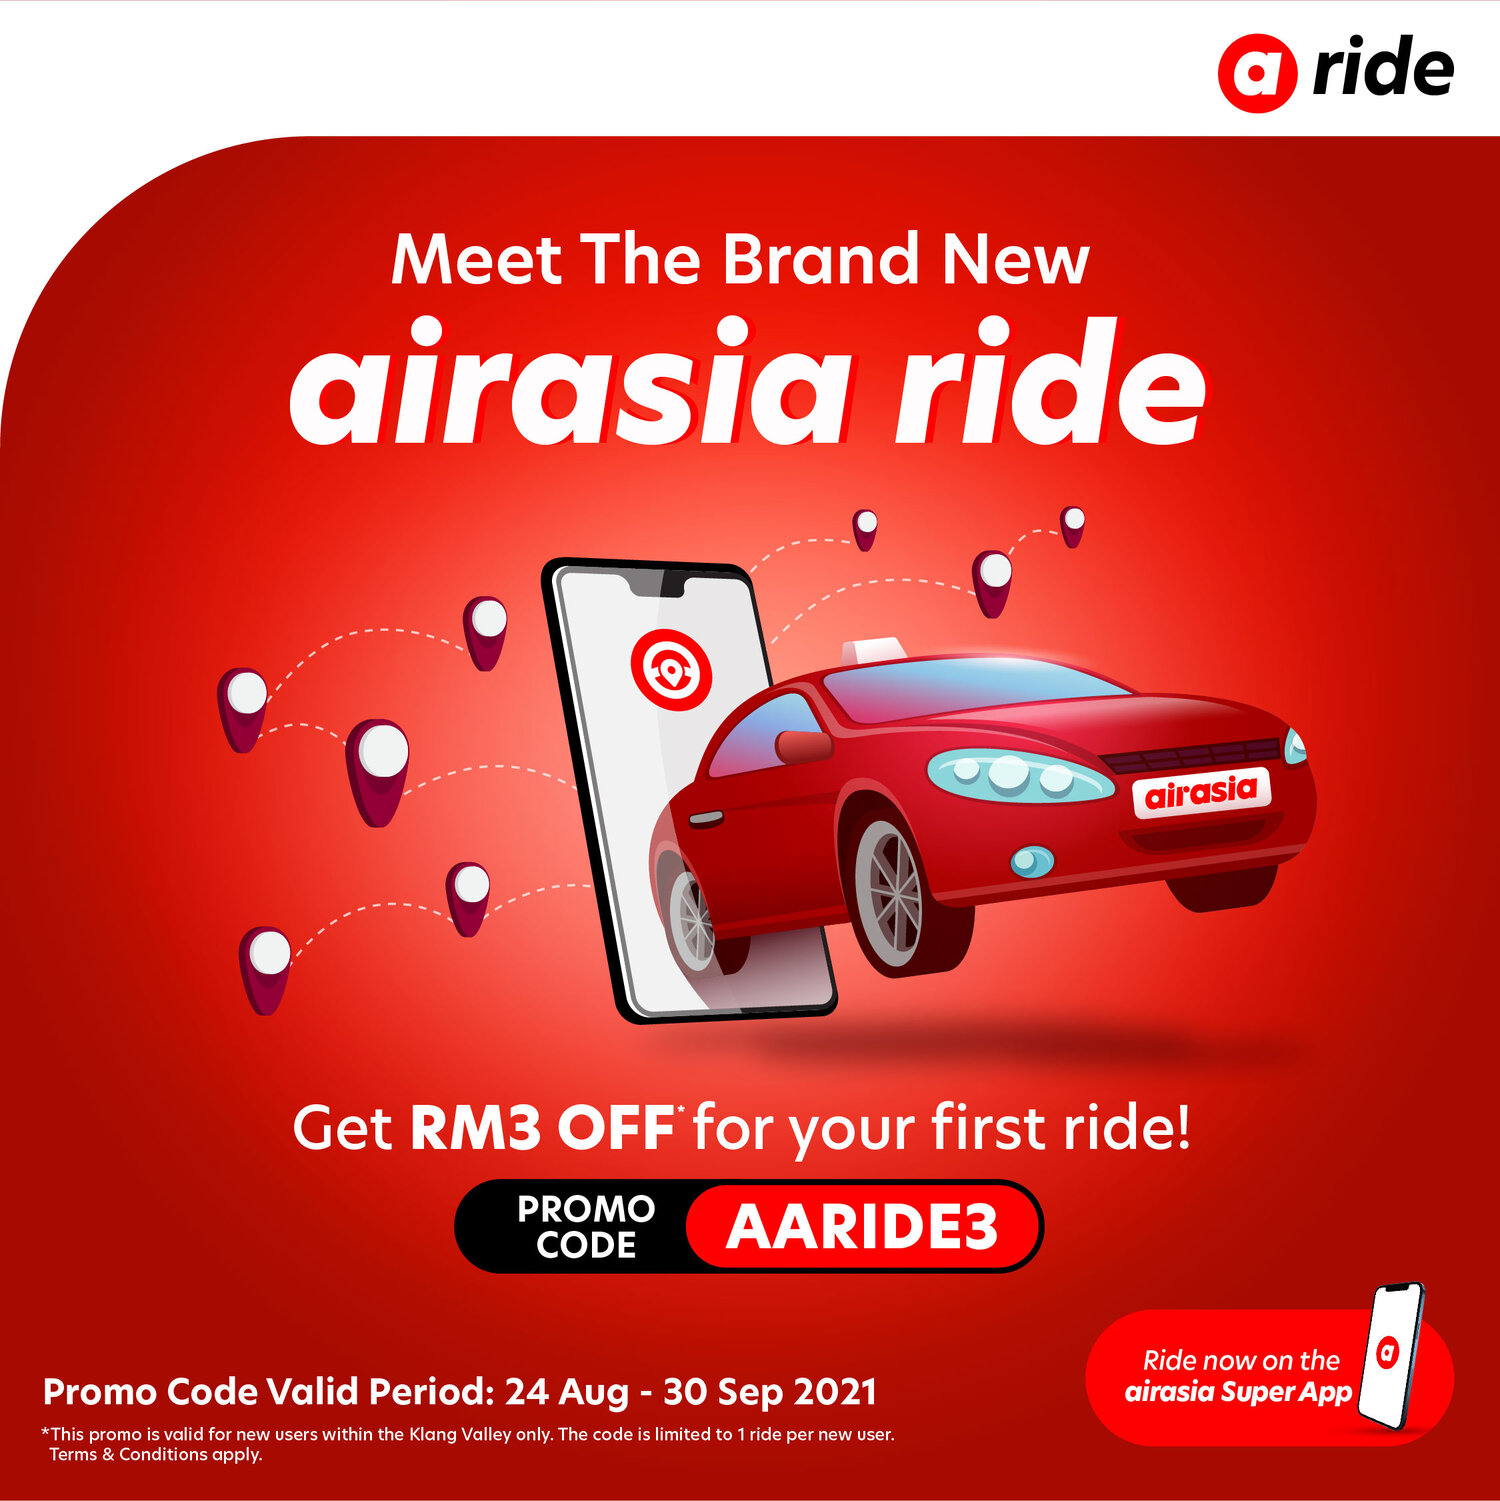 Airasia ride